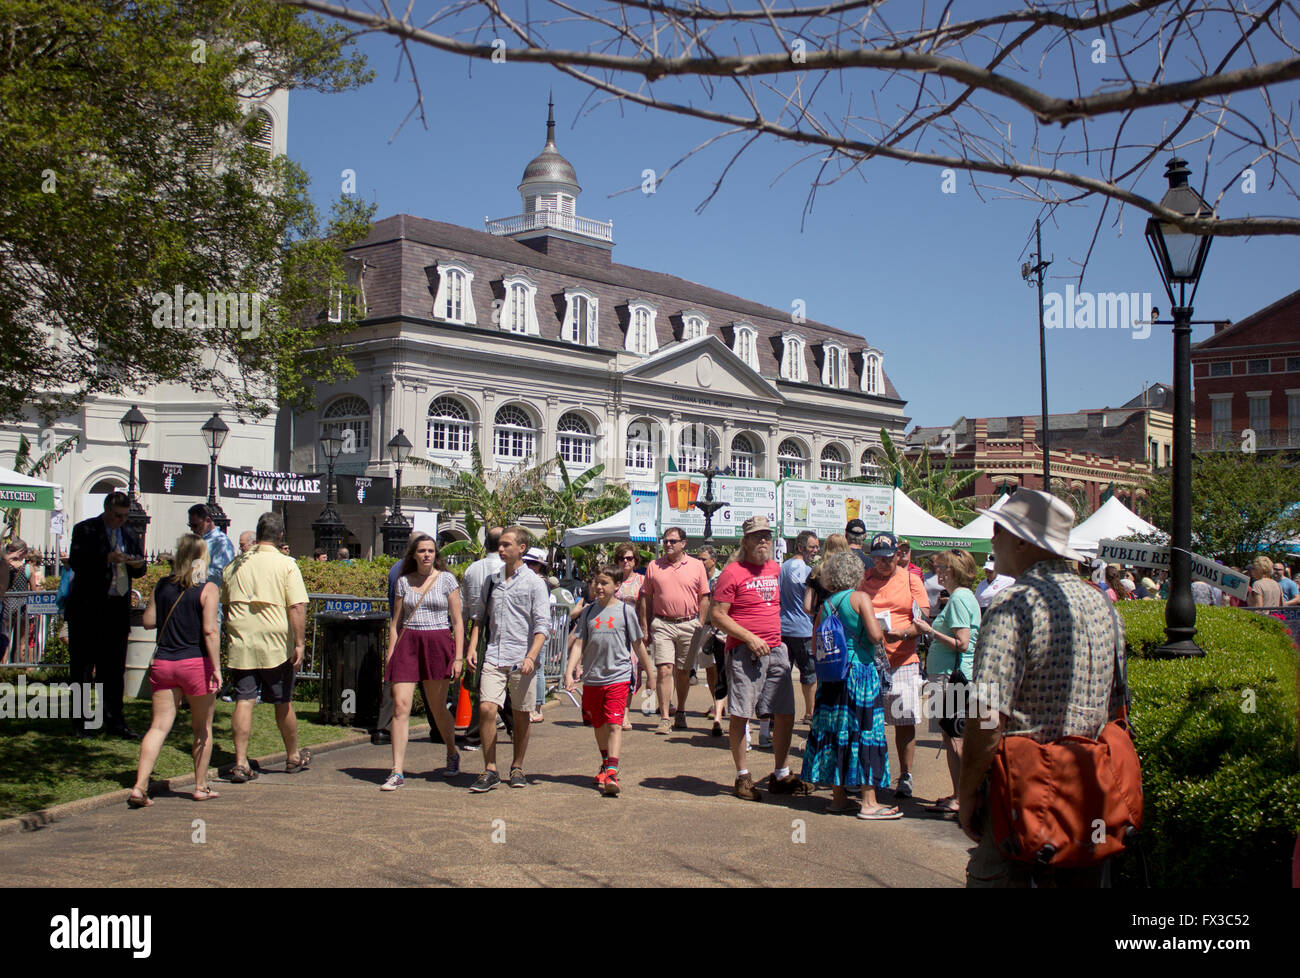 Aktivitäten in Jackson Square in New Orleans Französisch Quarter Festival. Stockfoto